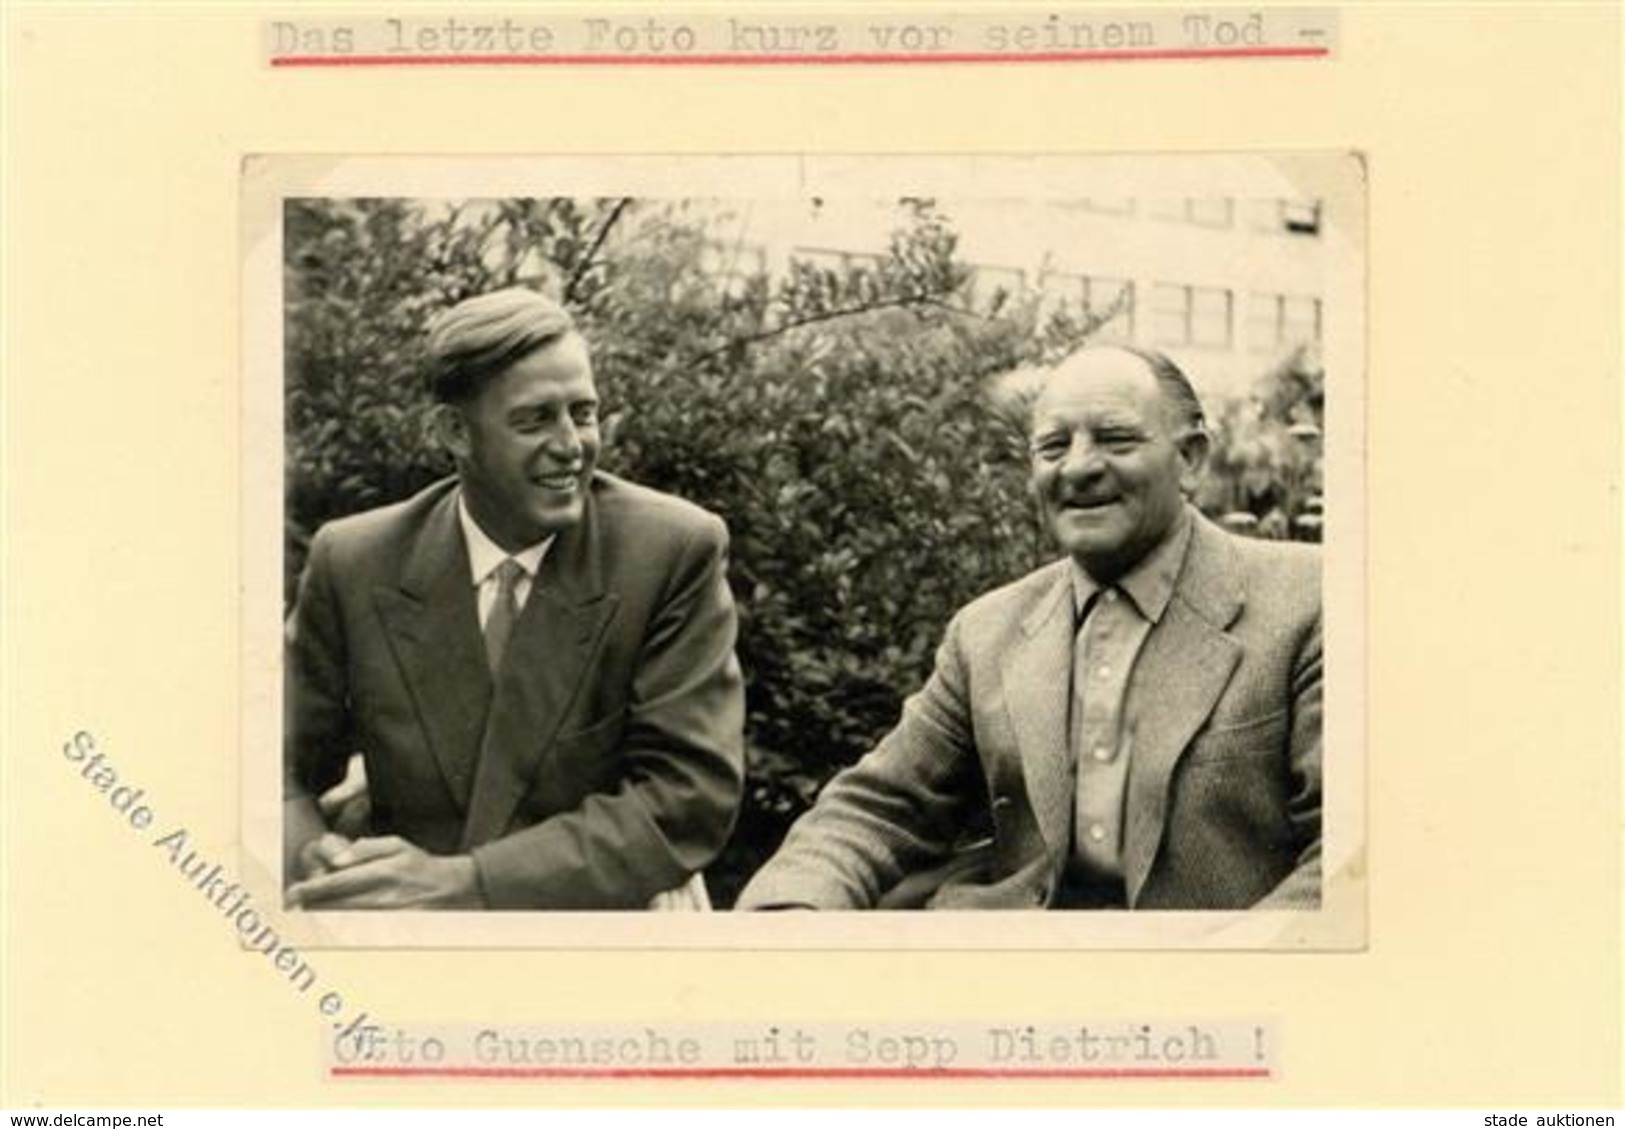 SS WK II - Foto -das Letzte Foto Kurz Vor Seinem Tod - Otto GÜSCHE Mit Sepp DIETRICH I - Guerre 1939-45